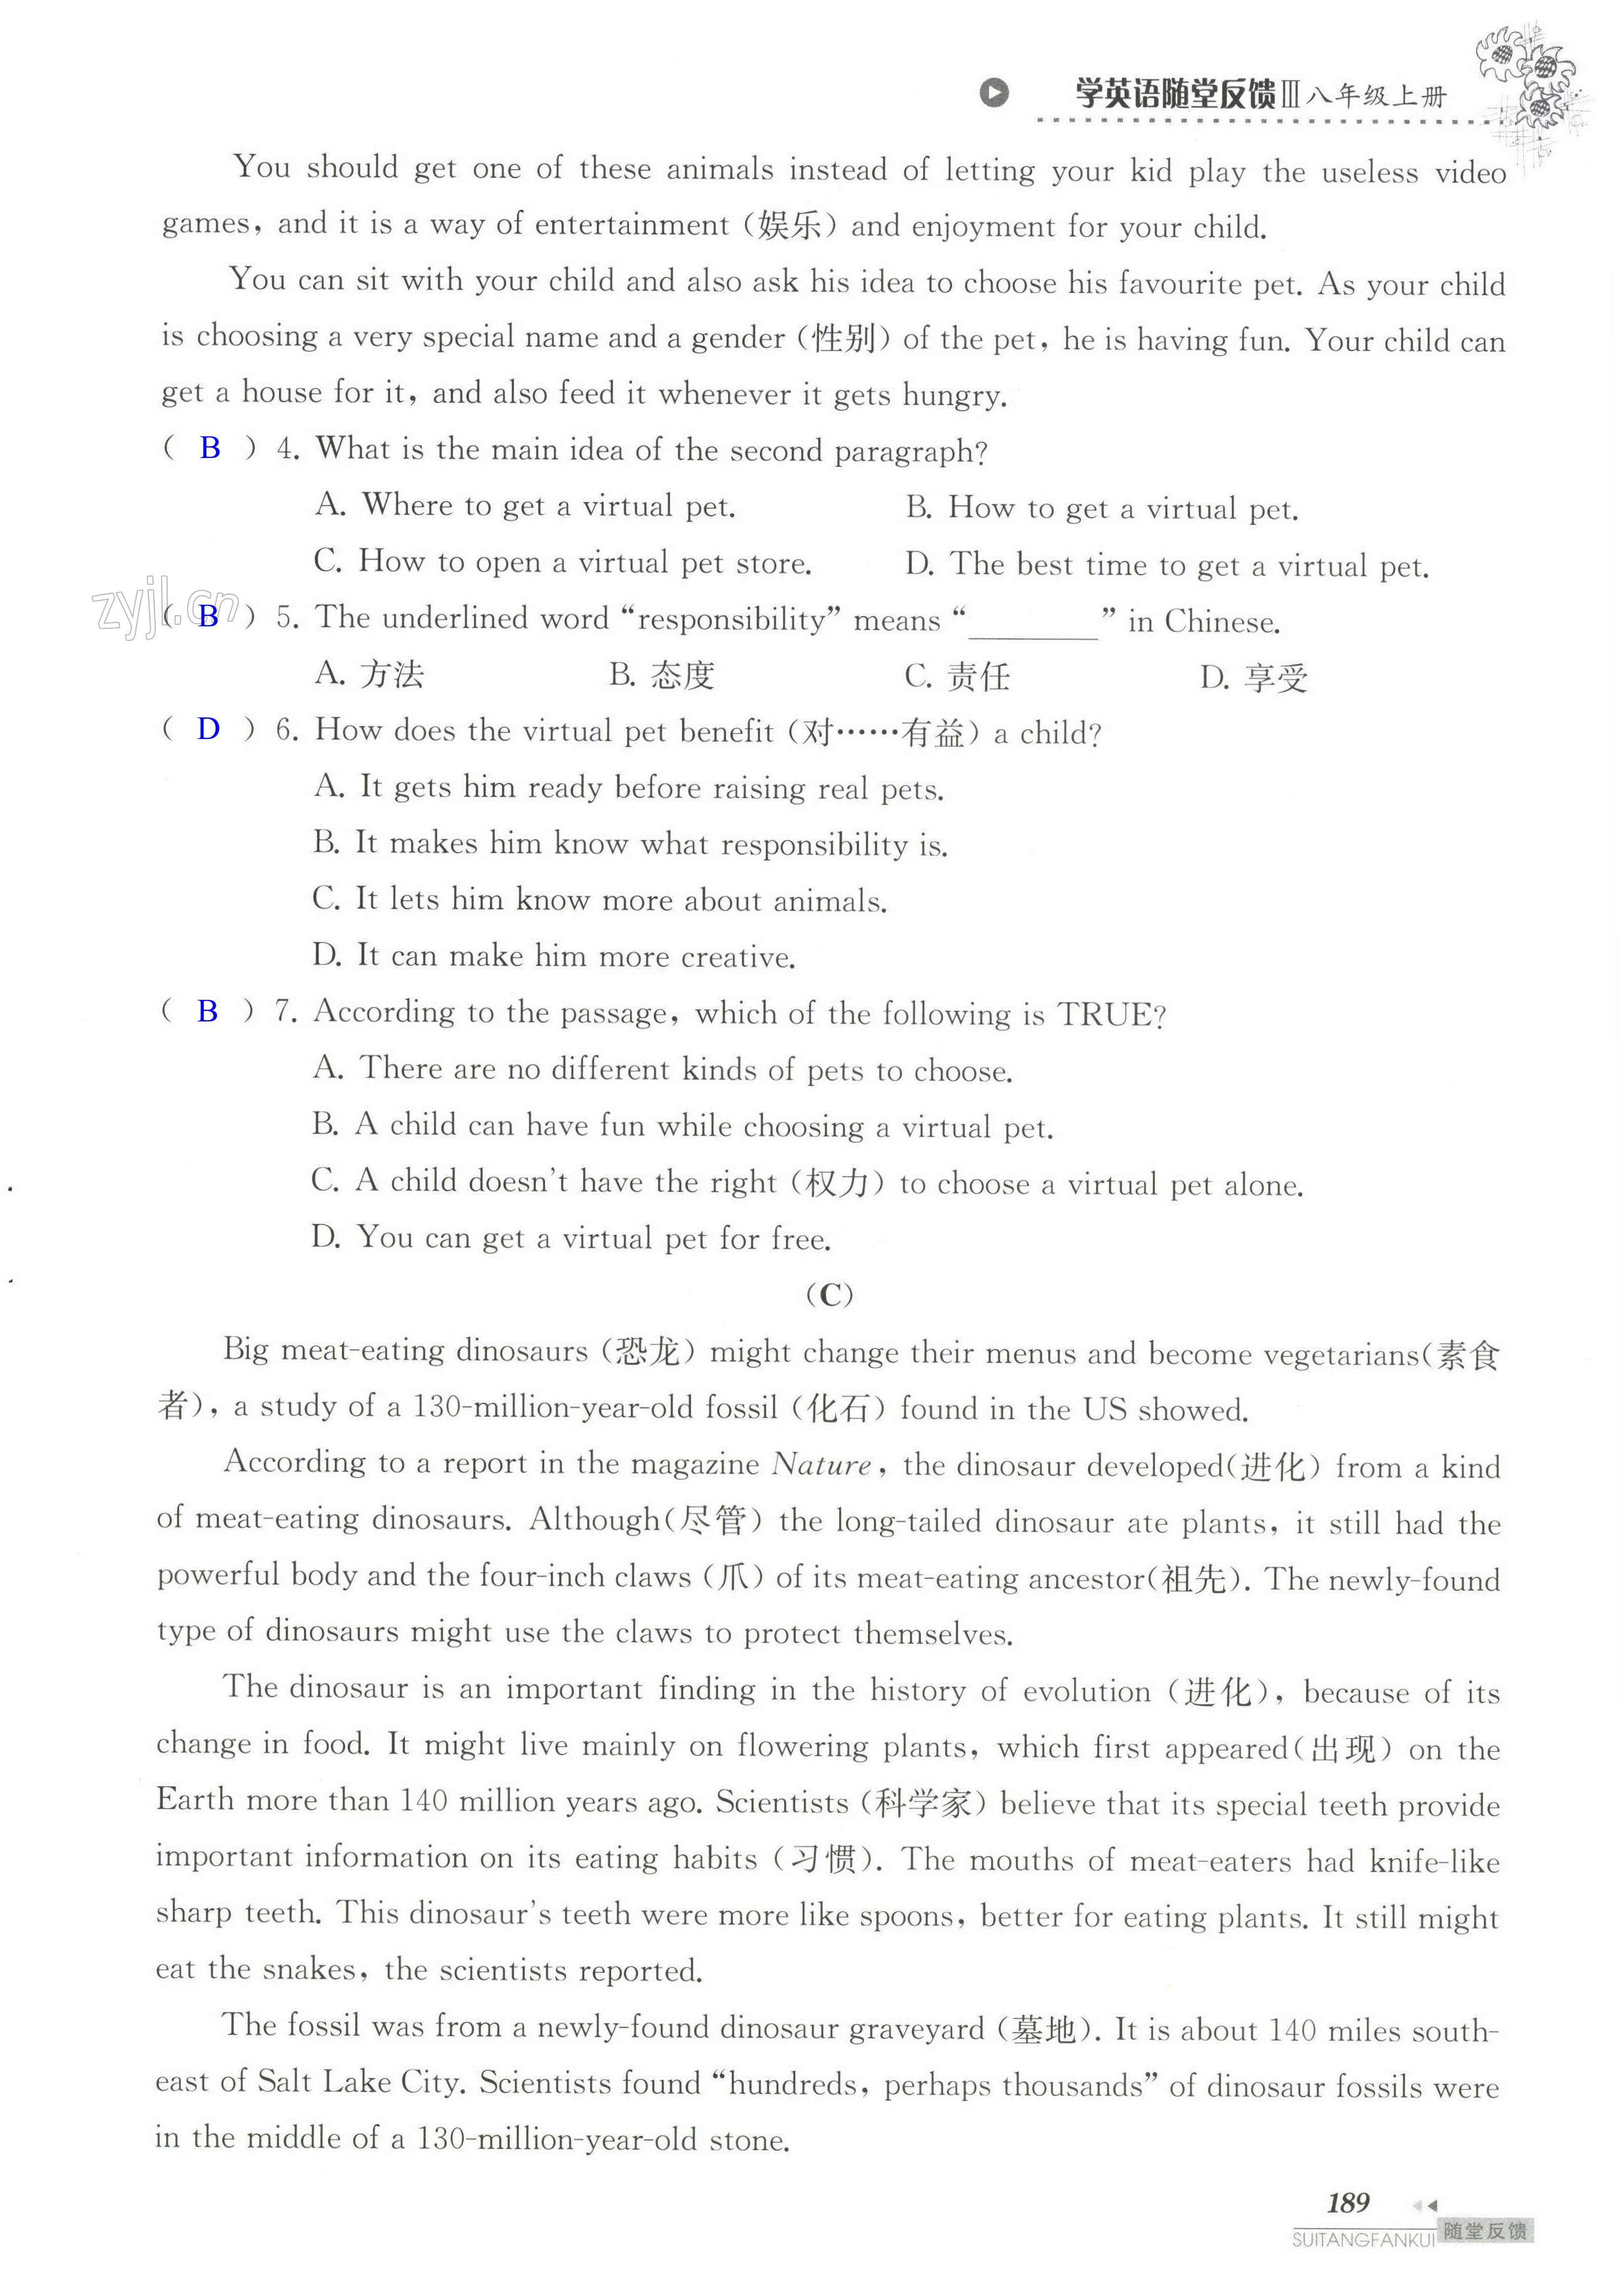 单元综合测试卷 Test for Unit 5 of 8A - 第189页